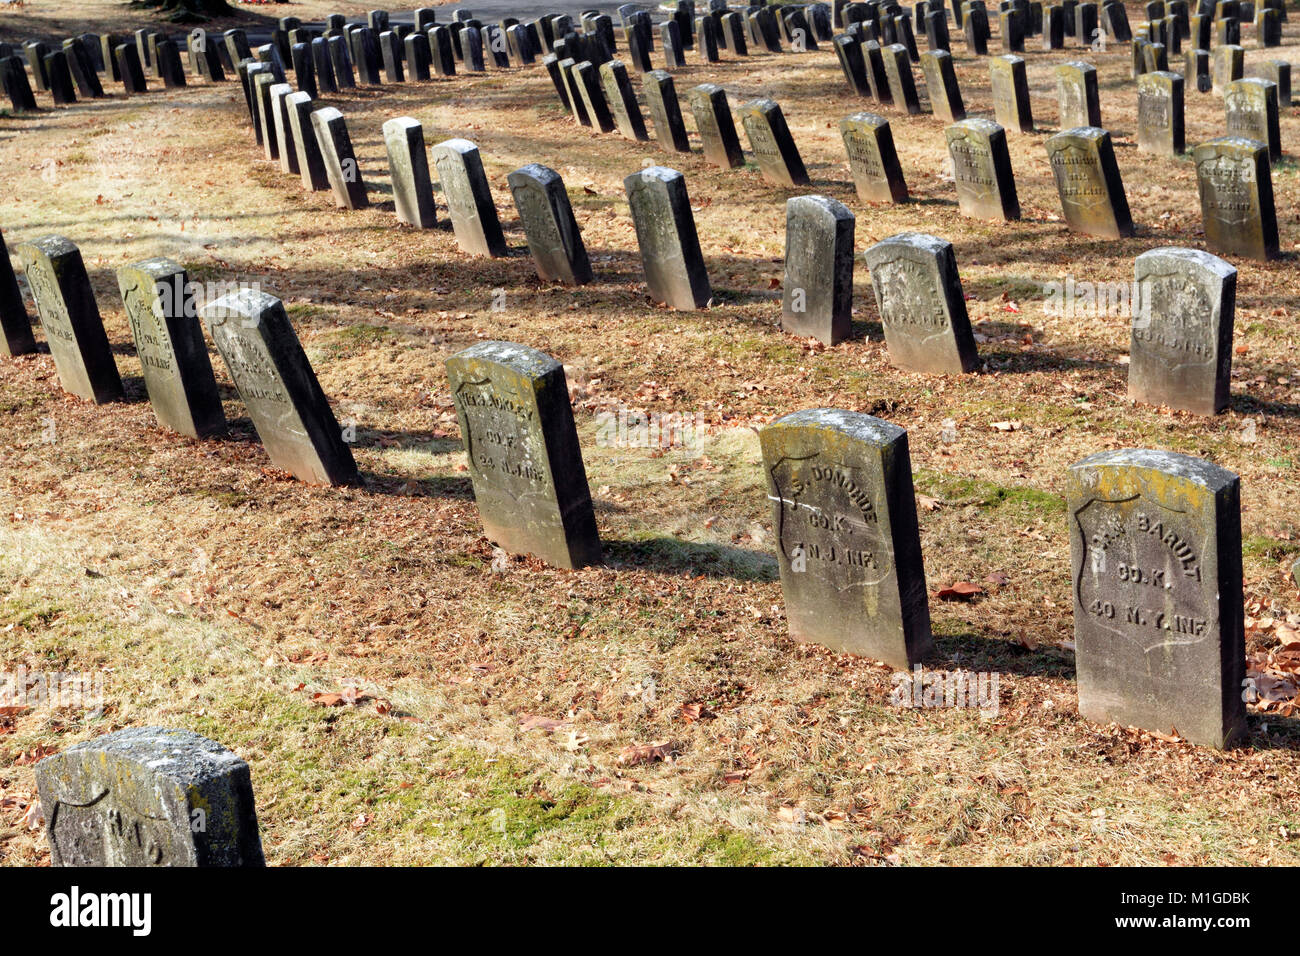 Los soldados de la Guerra Civil americana enterrado en el cementerio de Arlington Memorial Park, Kearny, Nueva Jersey, EE.UU. Foto de stock